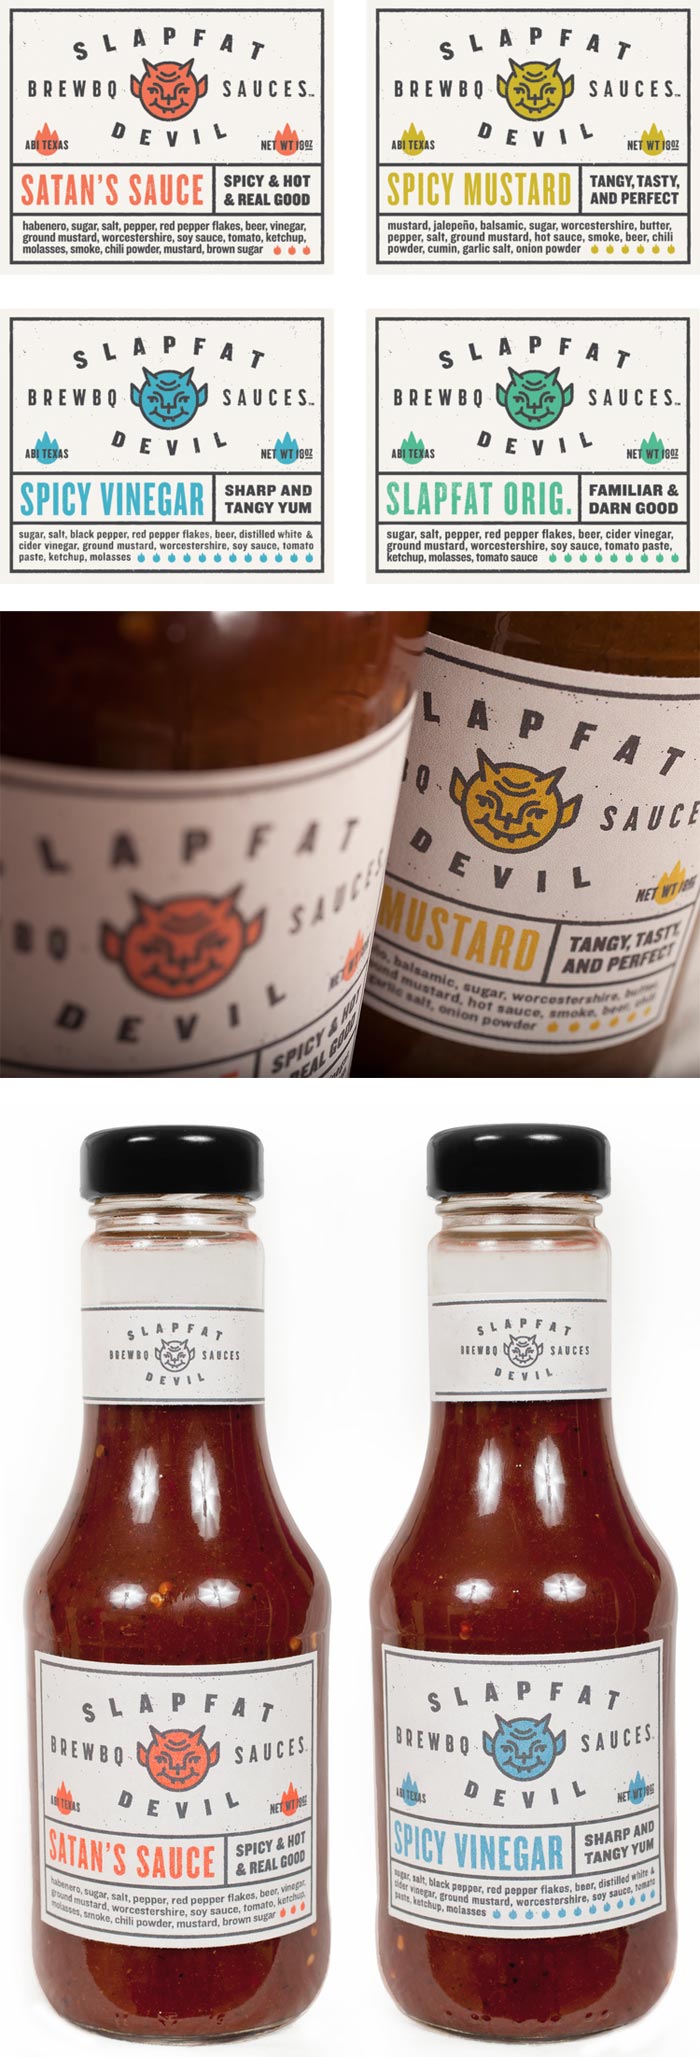 Ryan Feerer / Packaging design - Slapfat Brew-B-Q Sauce